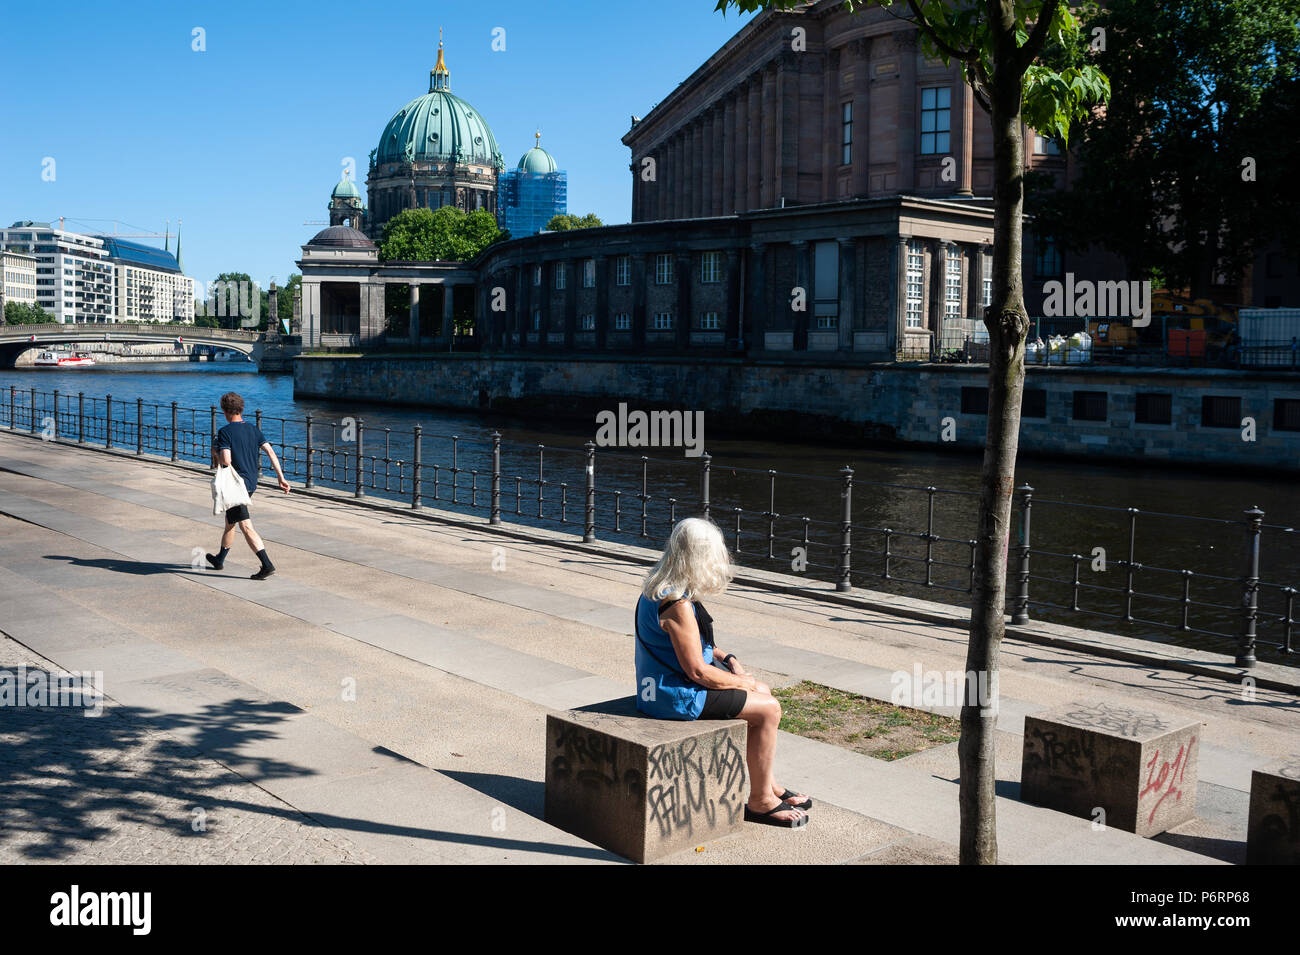 07.06.2018, Berlin, Deutschland, Europa - eine Frau sitzt am Ufer der Spree in der Berliner Mitte. Stockfoto